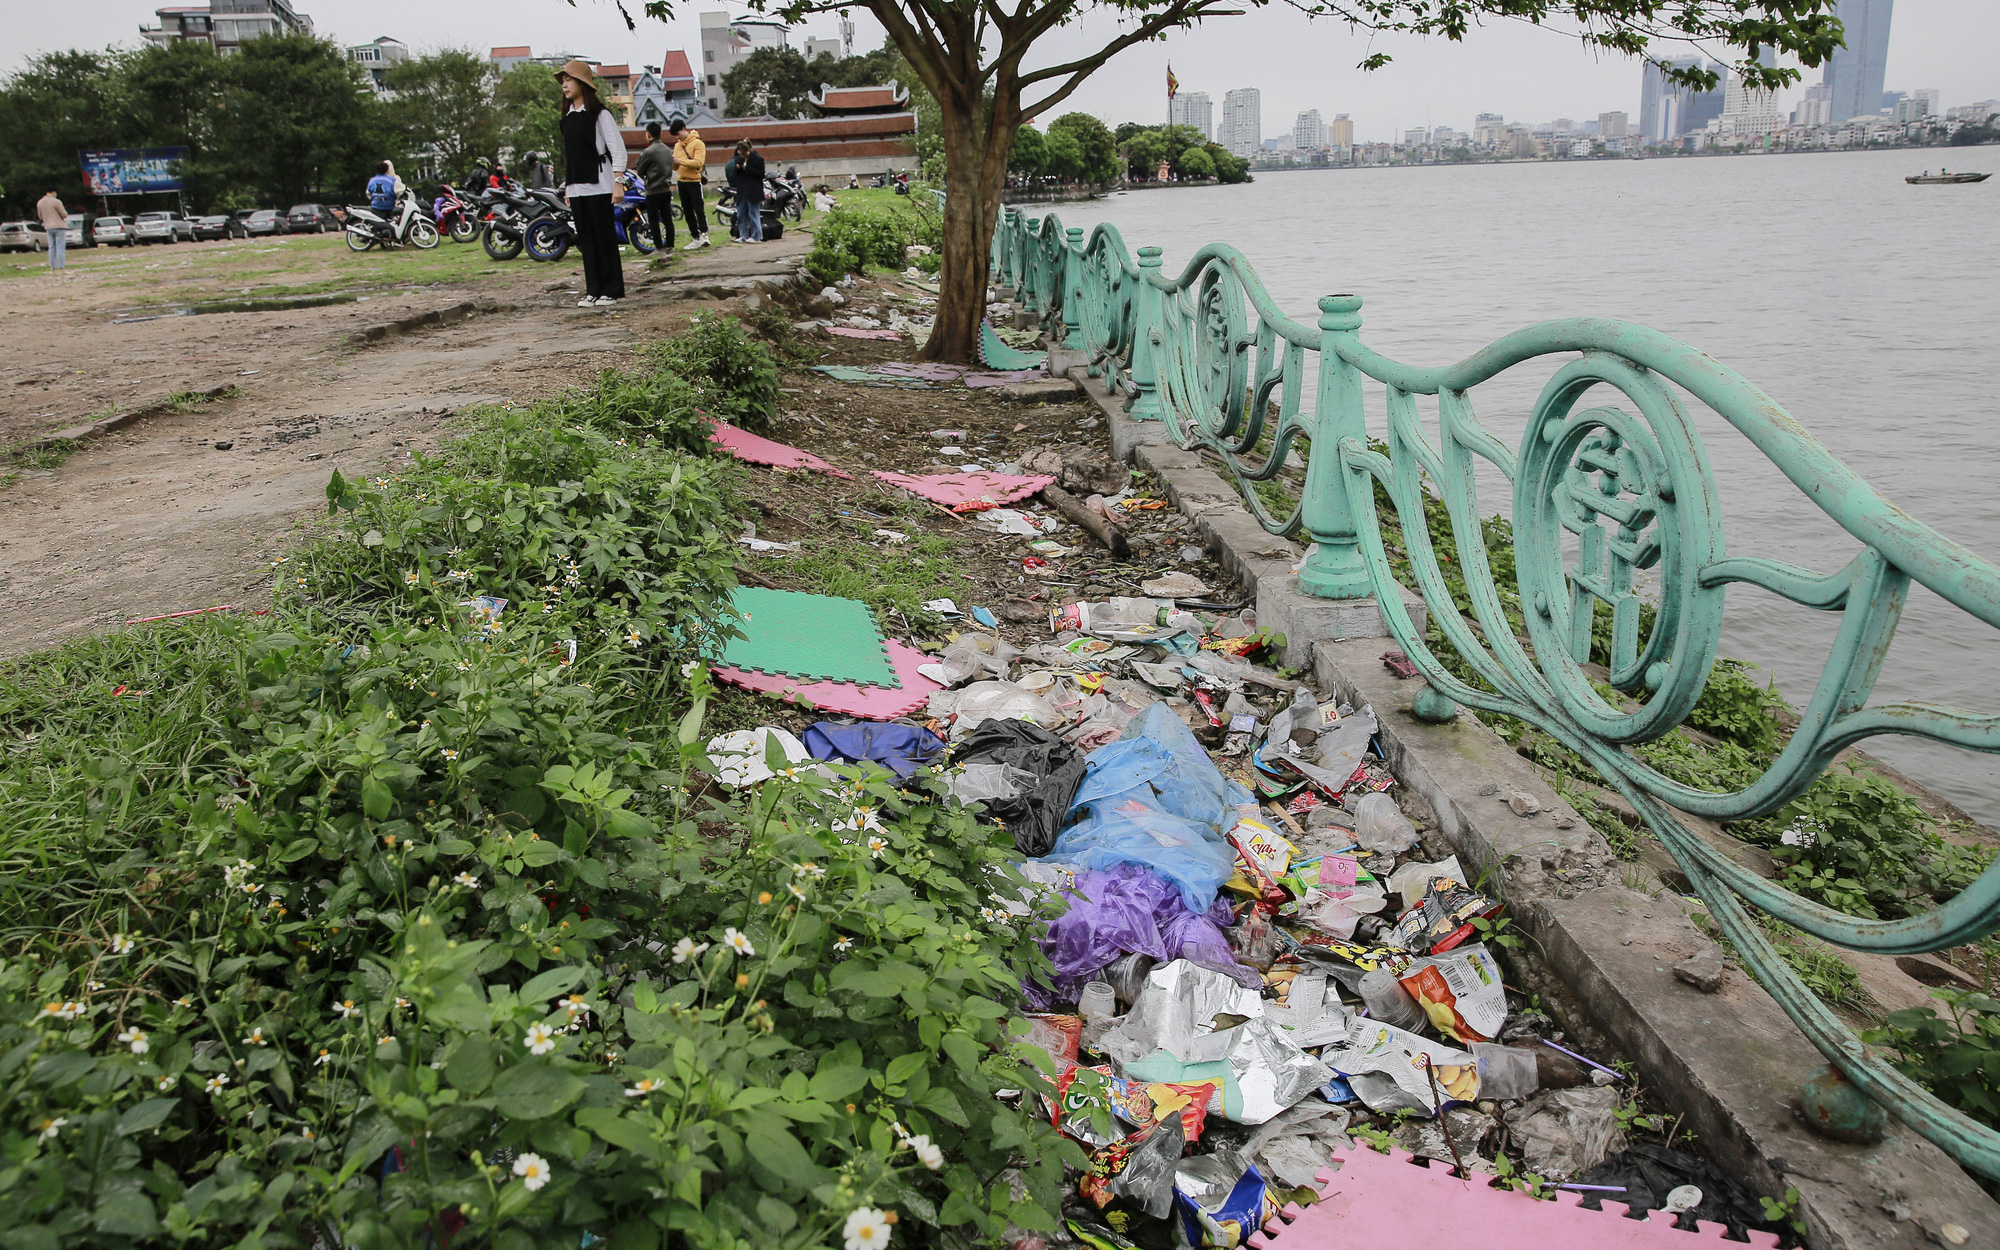 Hà Nội: Địa điểm vui chơi, check-in của giới trẻ gần phủ Tây Hồ tràn lan rác thải trong thời gian dài